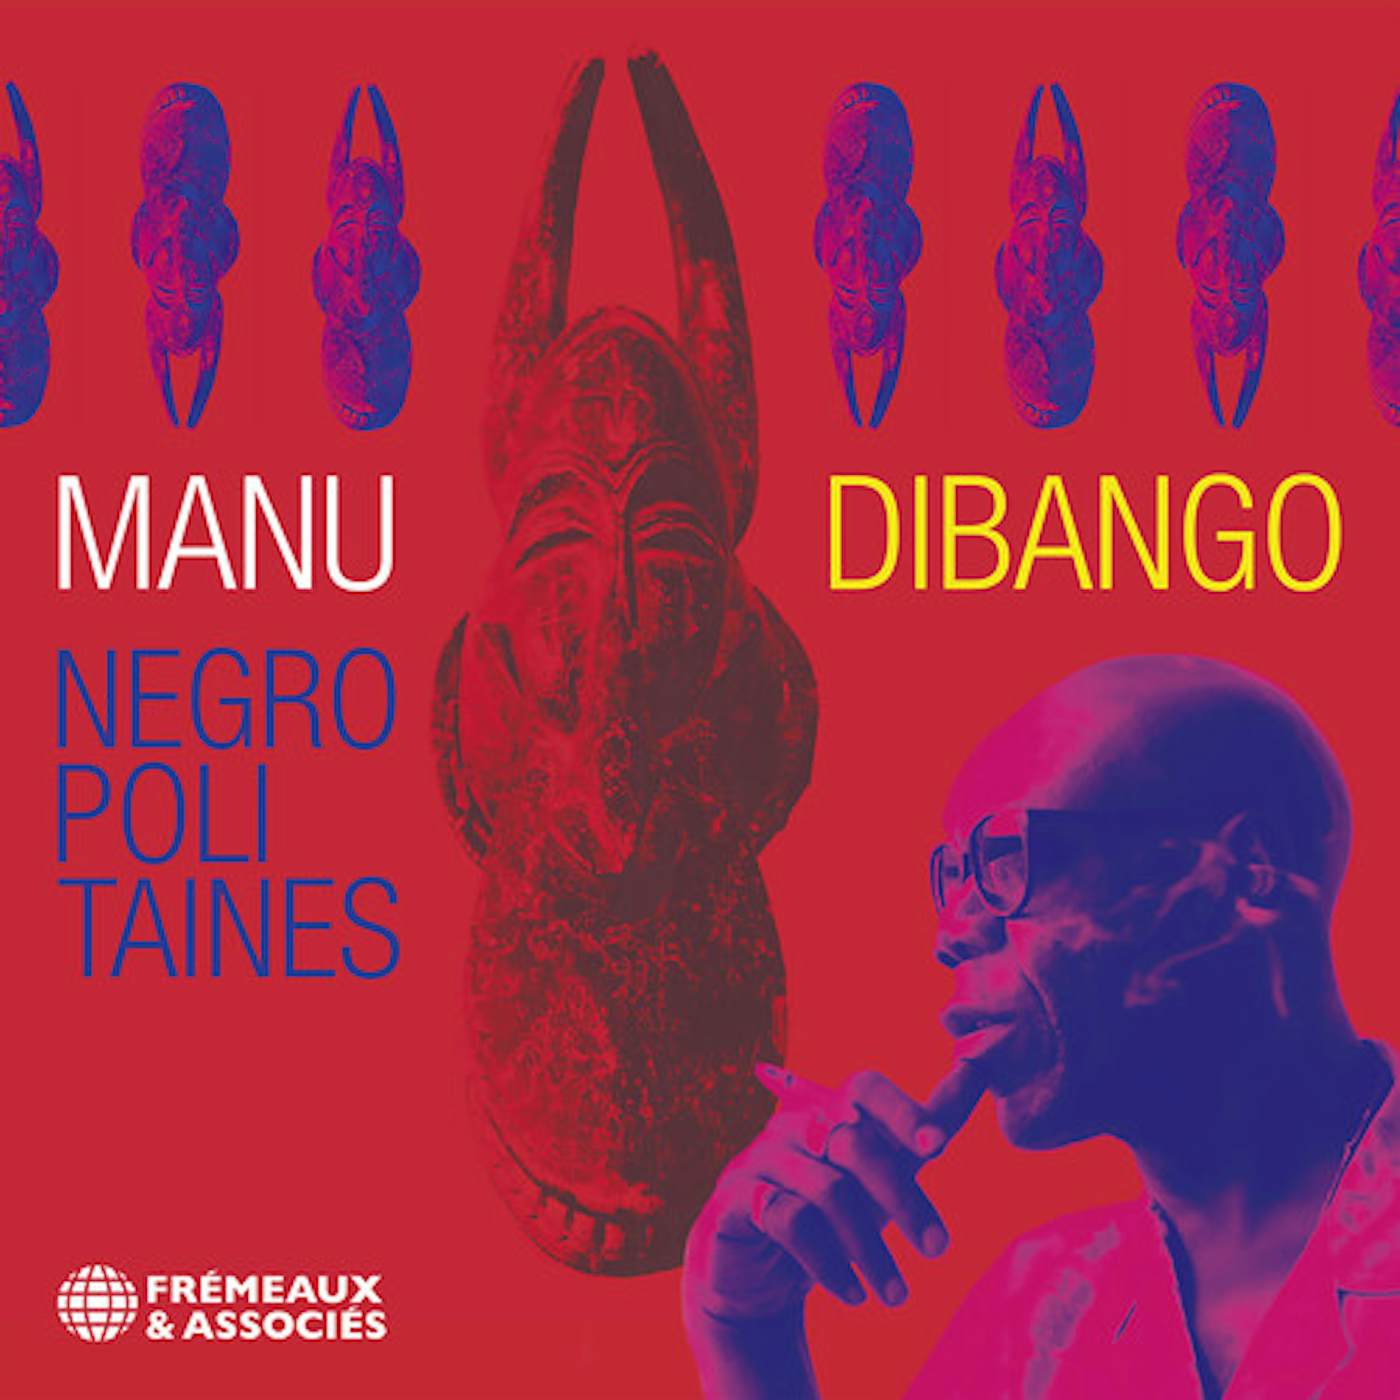 Manu Dibango NEGROPOLITAINES CD